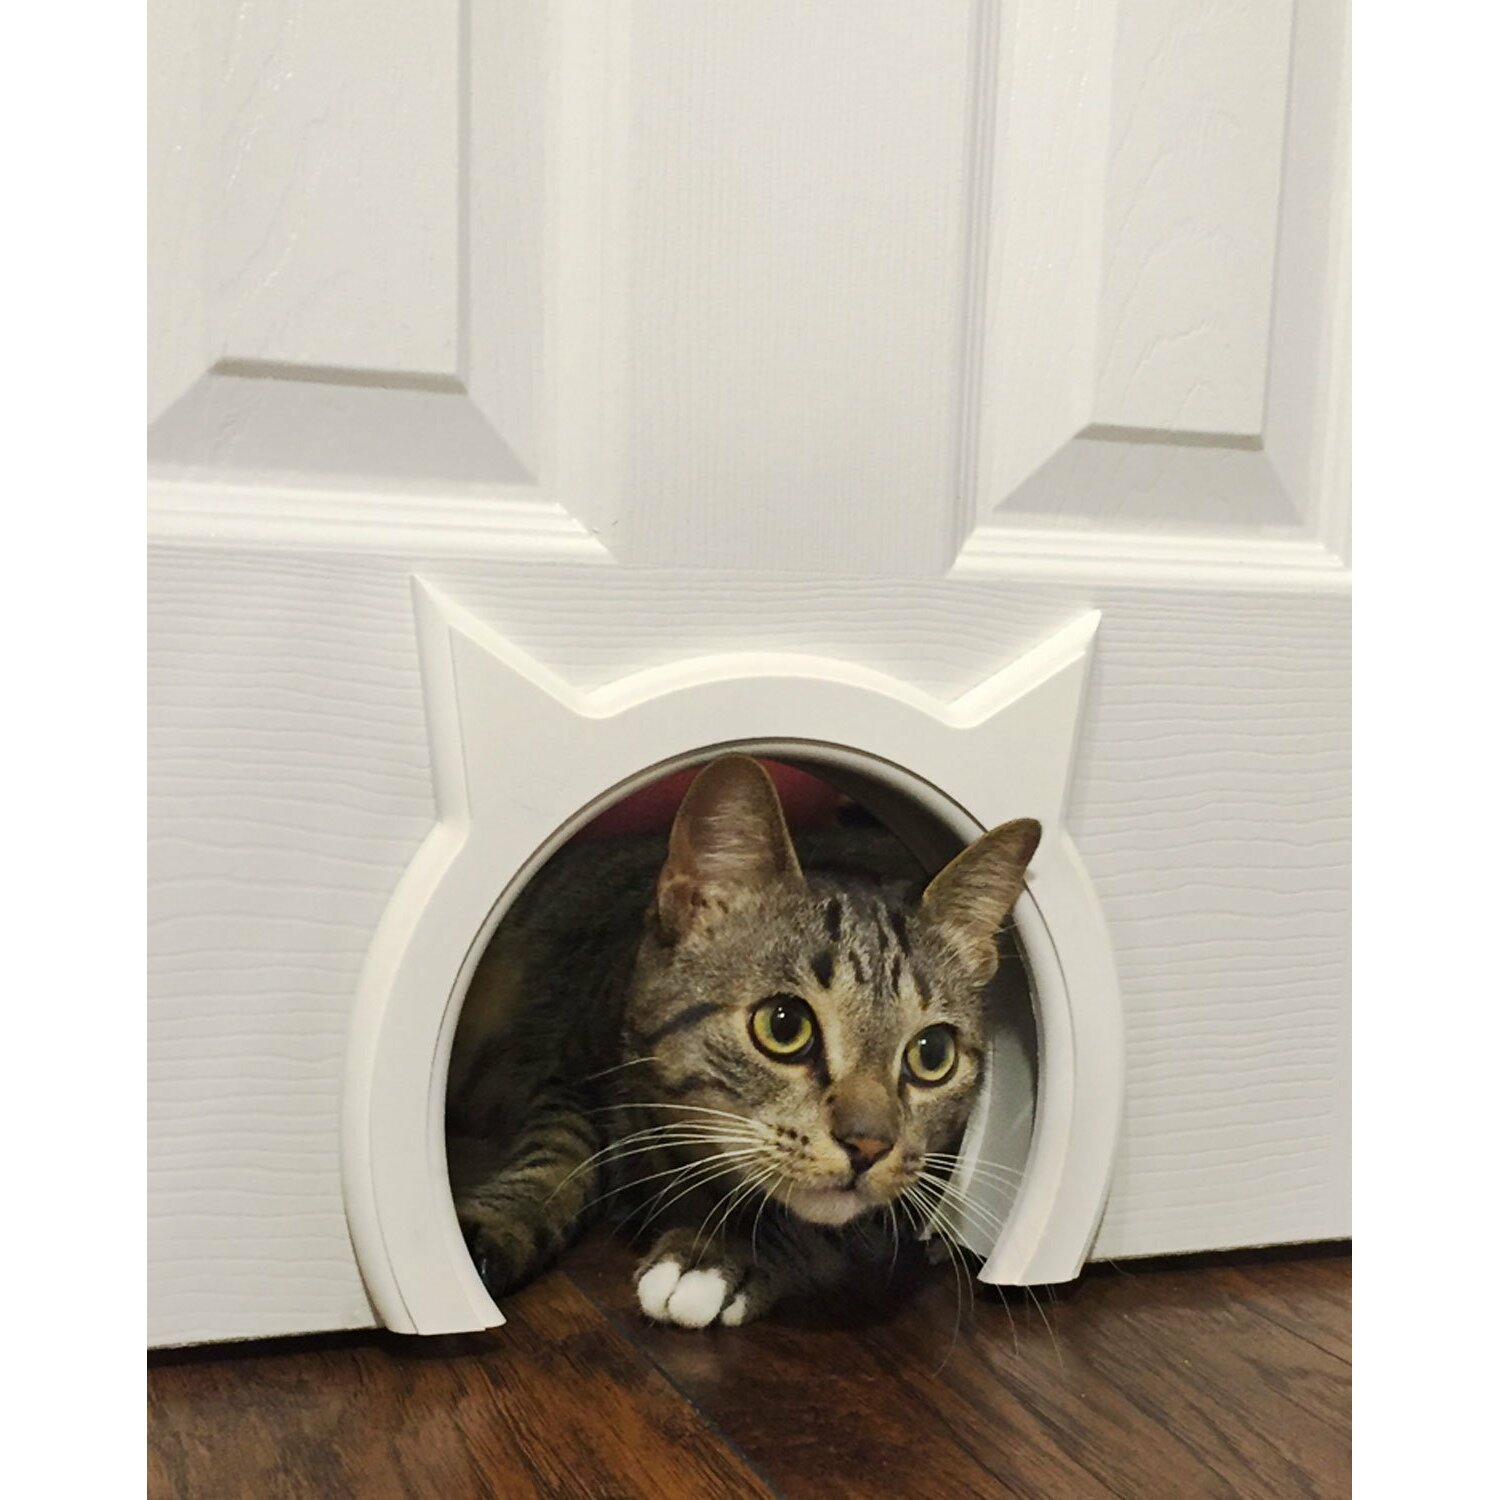 TheKittyPass Interior Cat Door Reviews Wayfair